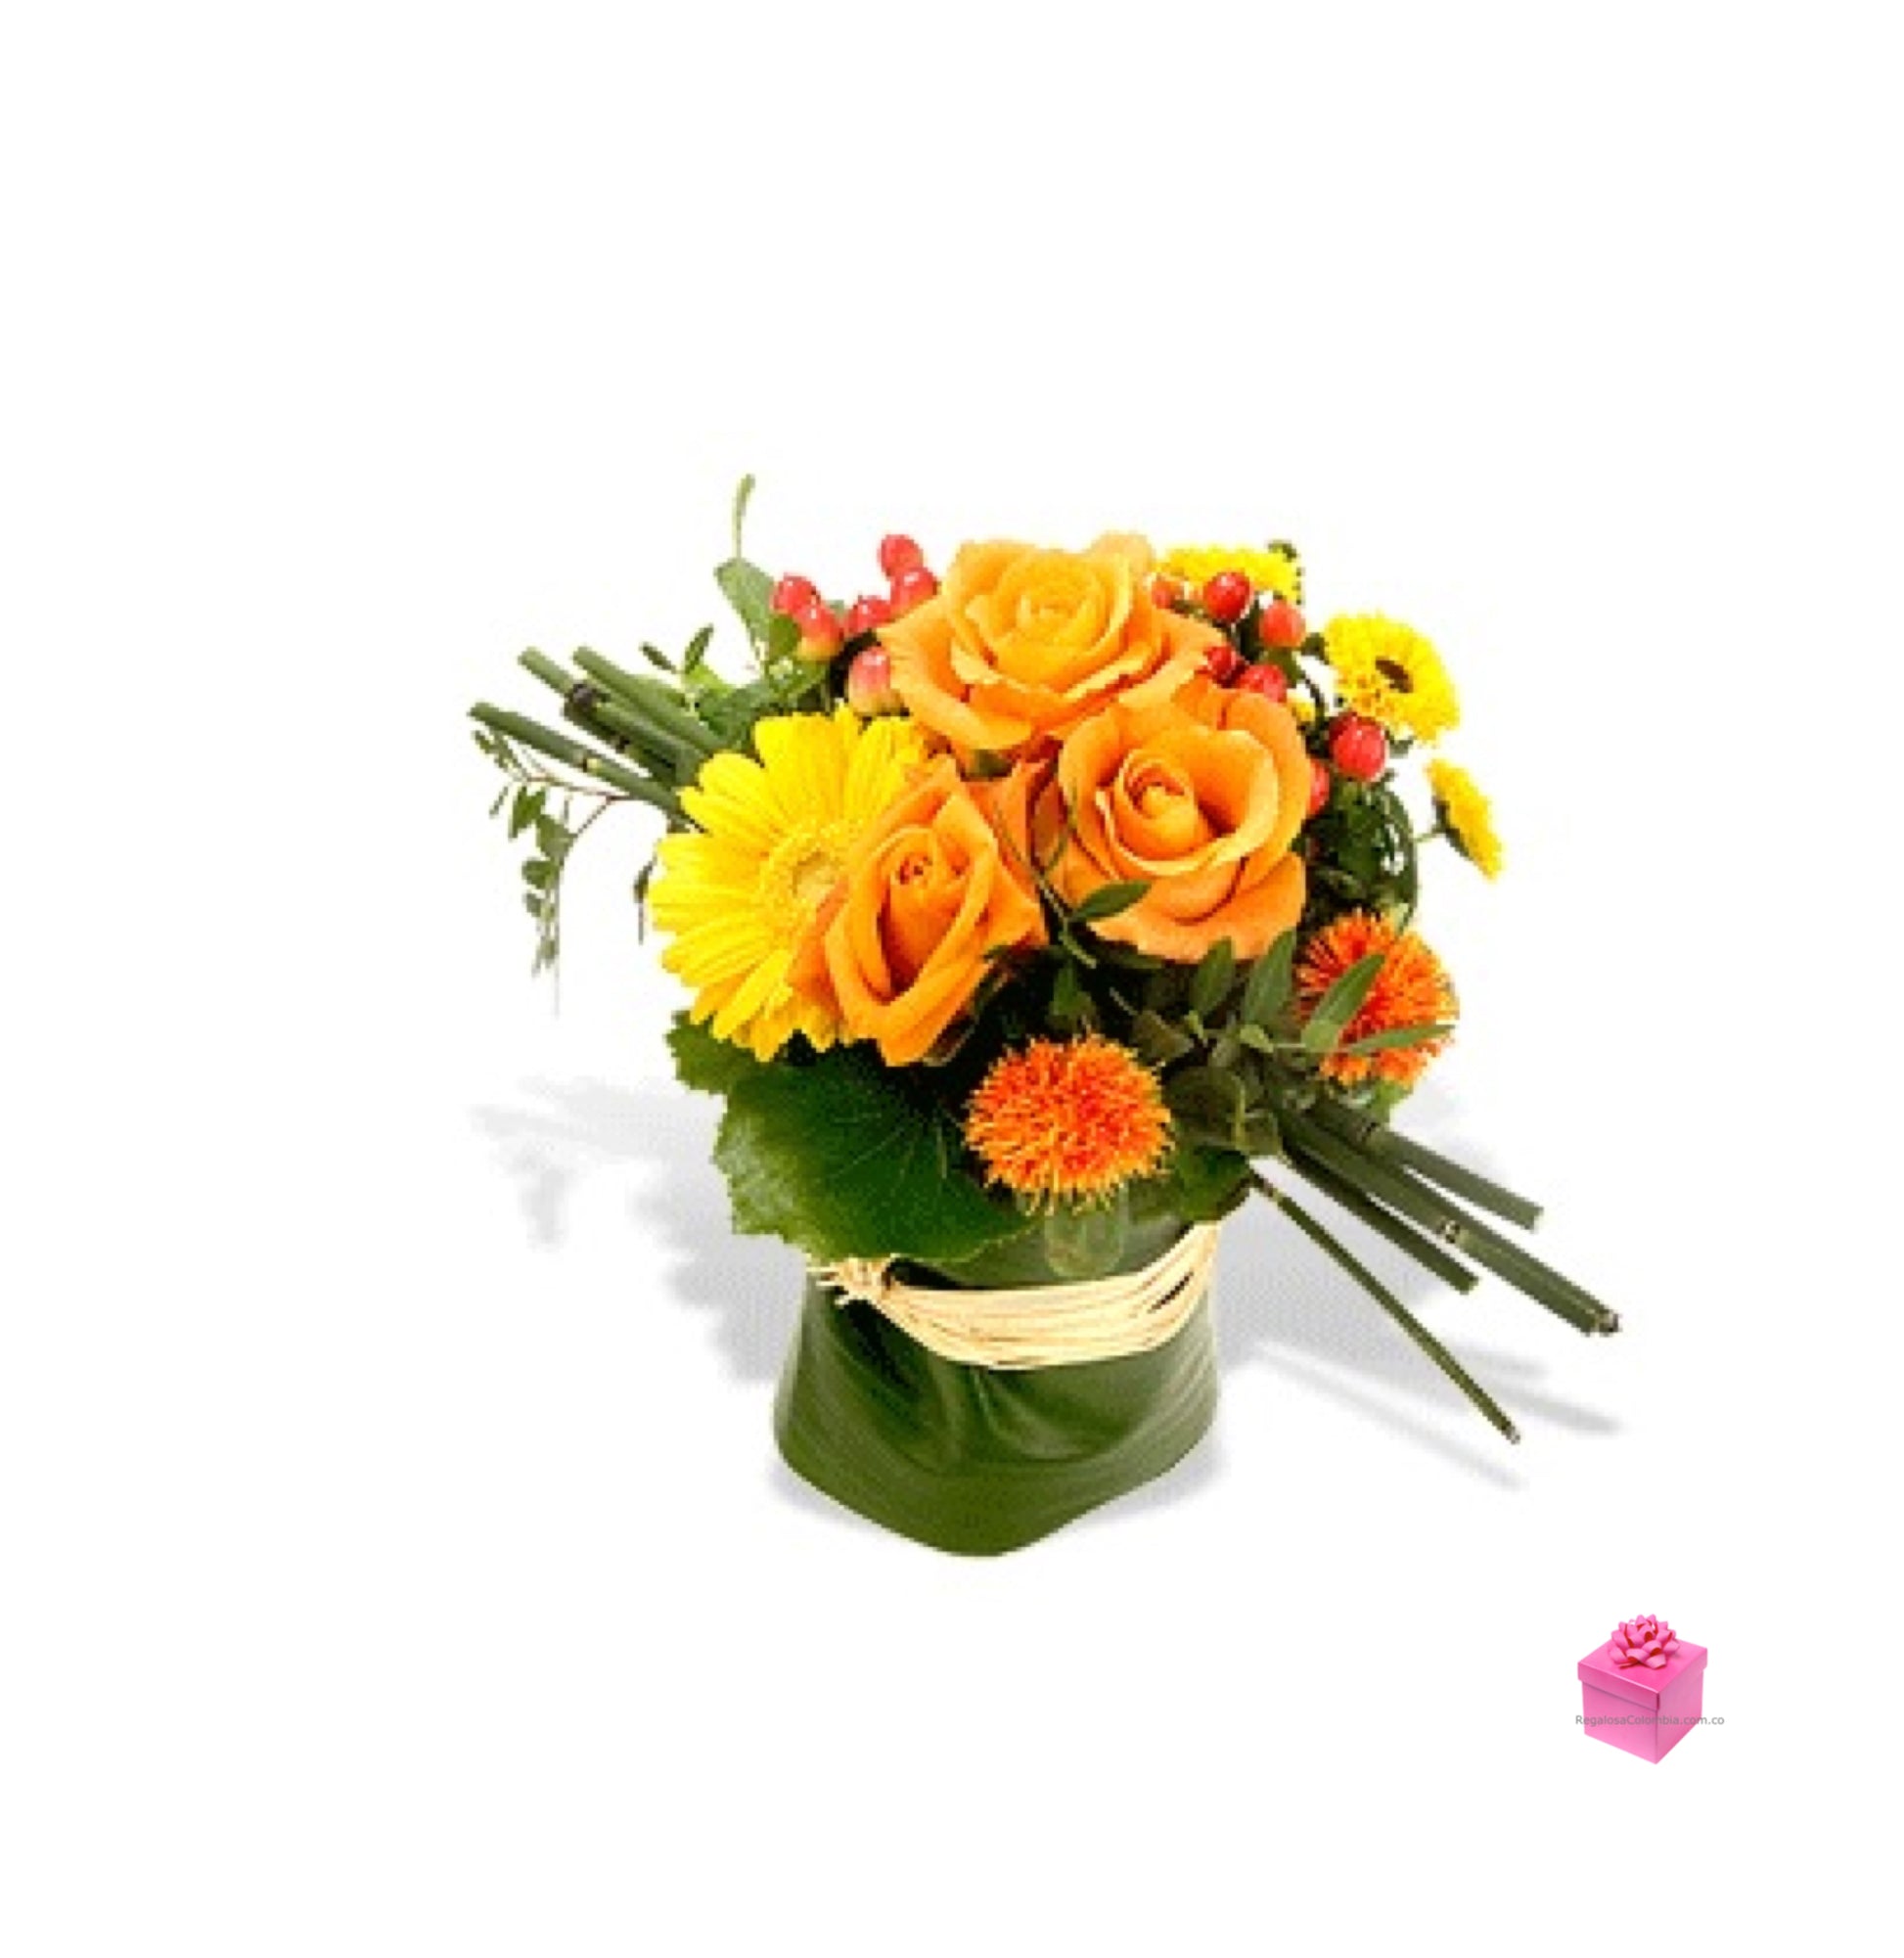 Kuber. Diseño minimalista de Rosas y gerberas, acompañadas de follaje tropical en un florero de cristal. Envío de Flores a Colombia